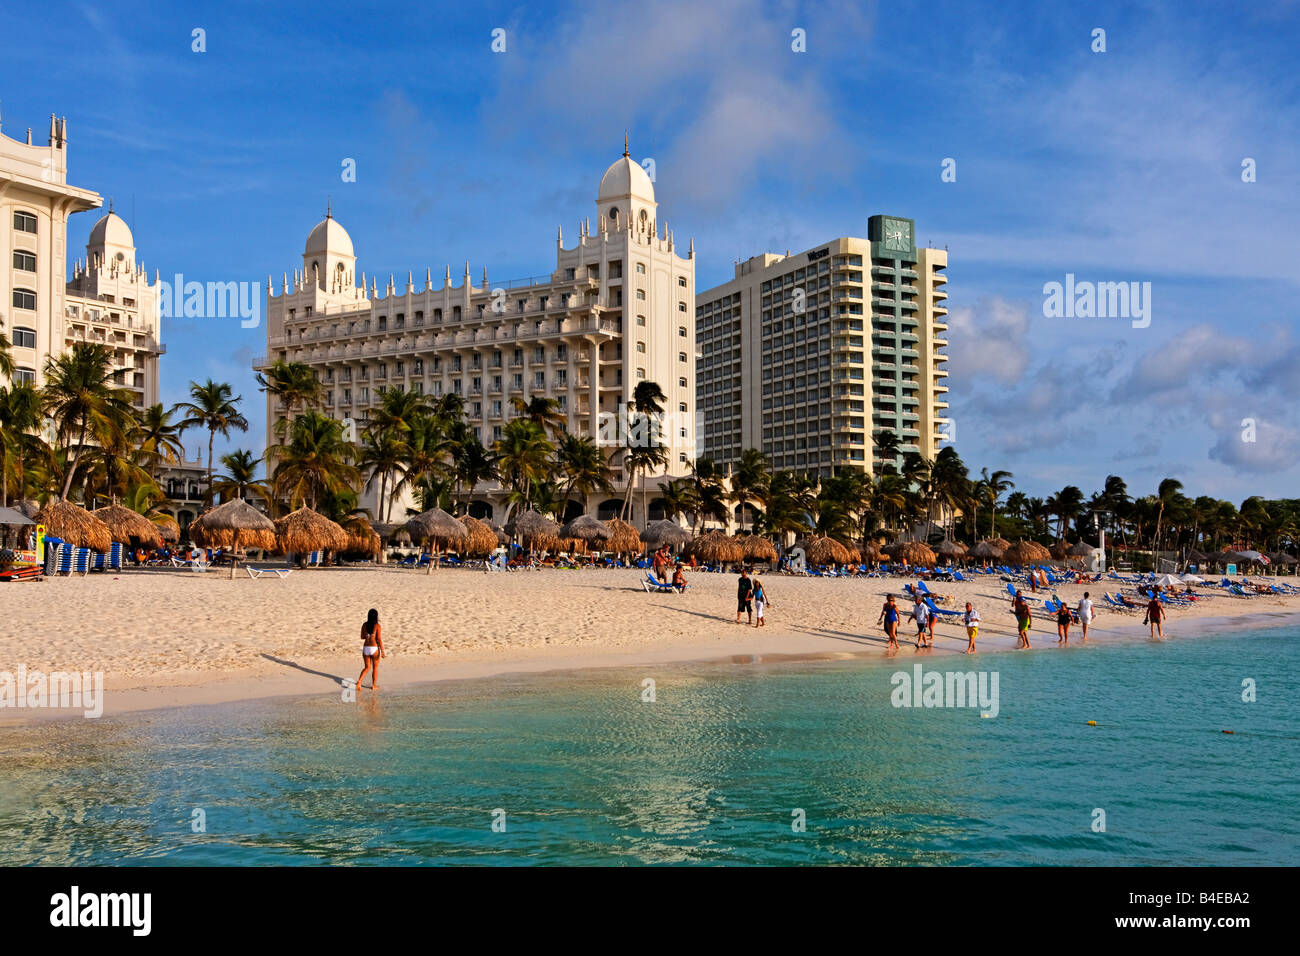 Palm Beach Aruba Antilles néerlandaises Antilles Amérique Centrale Riu Hotel Casino Banque D'Images